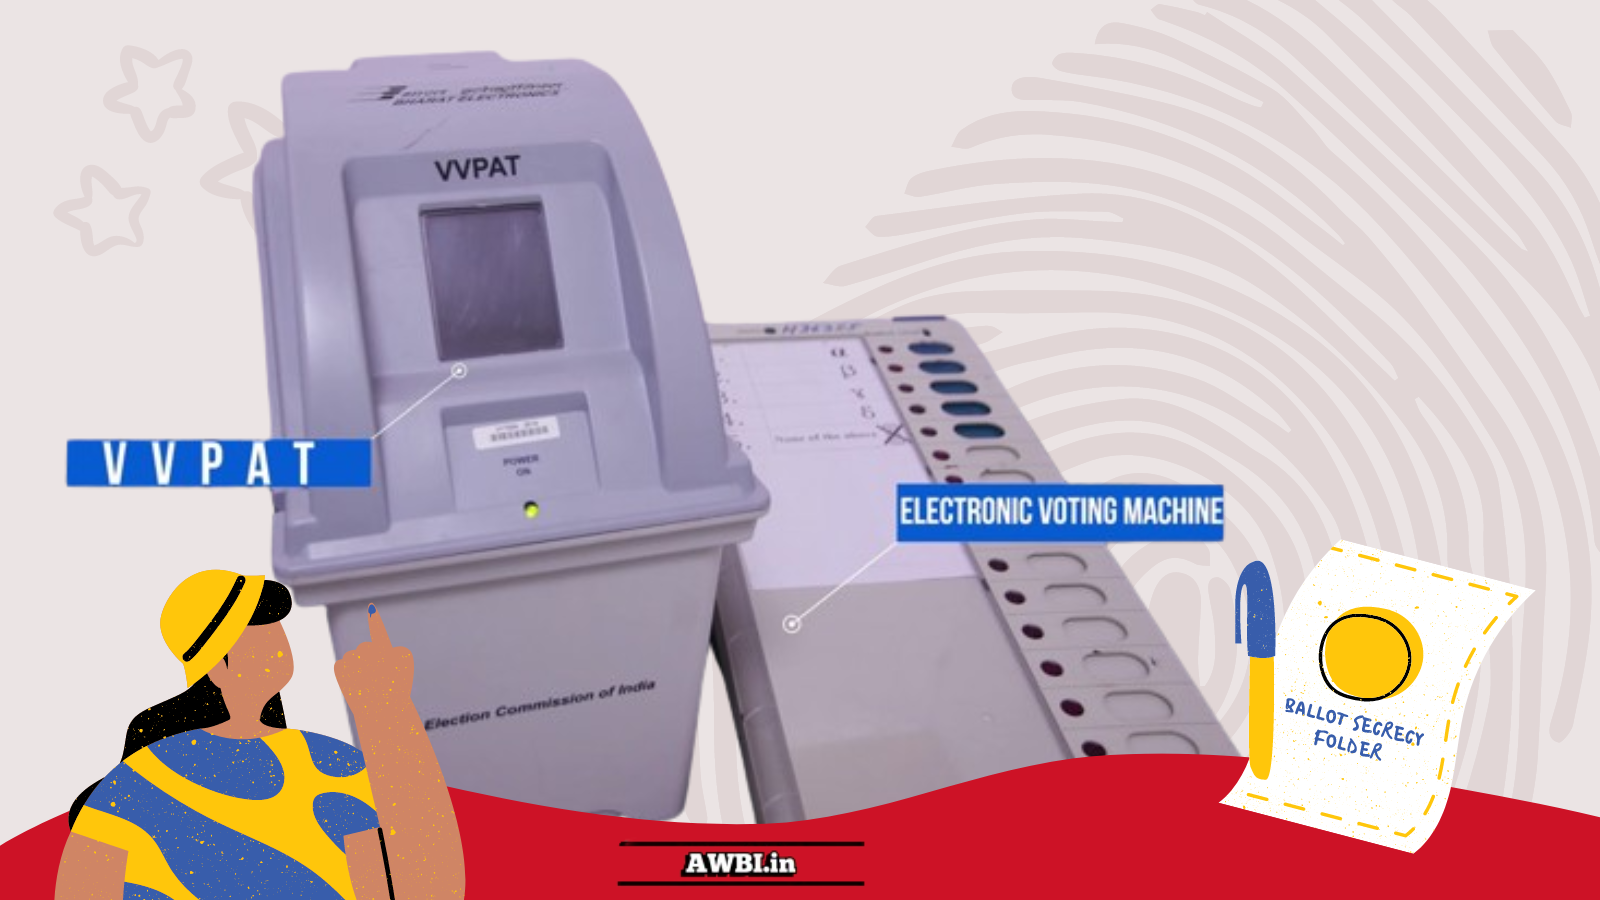 VVPAT - Voter Verifiable Paper Audit Trail